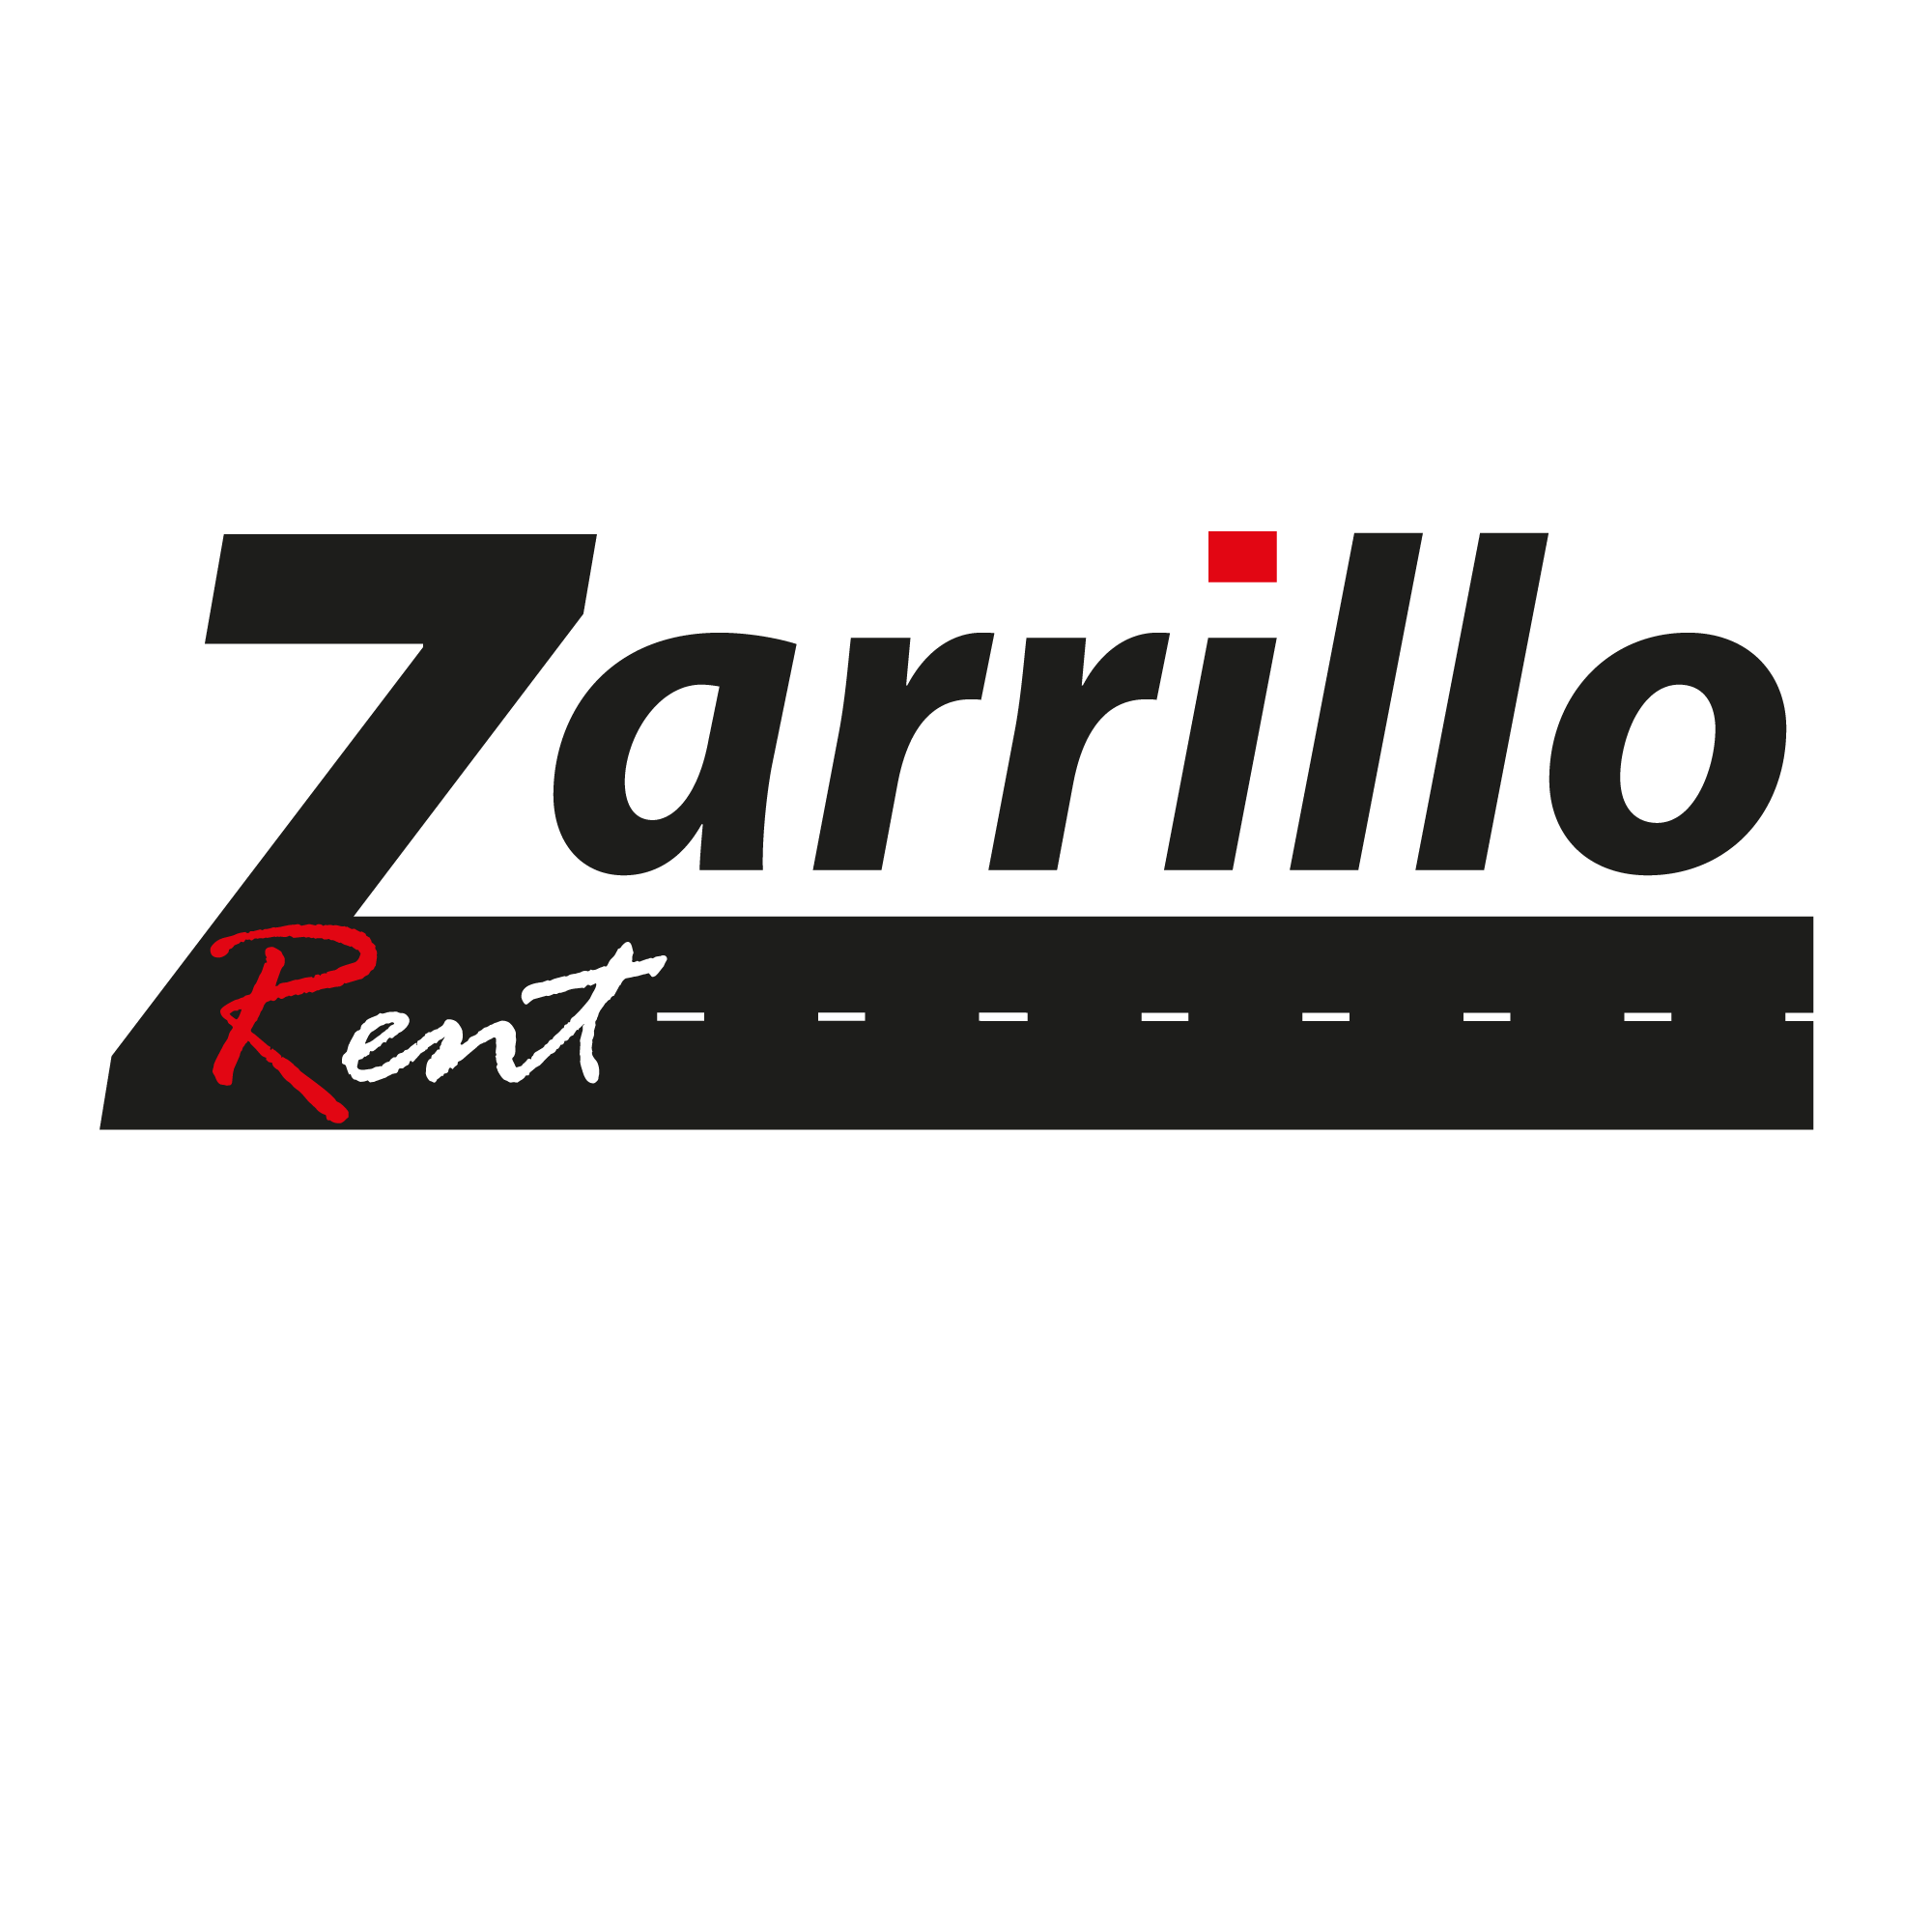 Zarrillo Rent